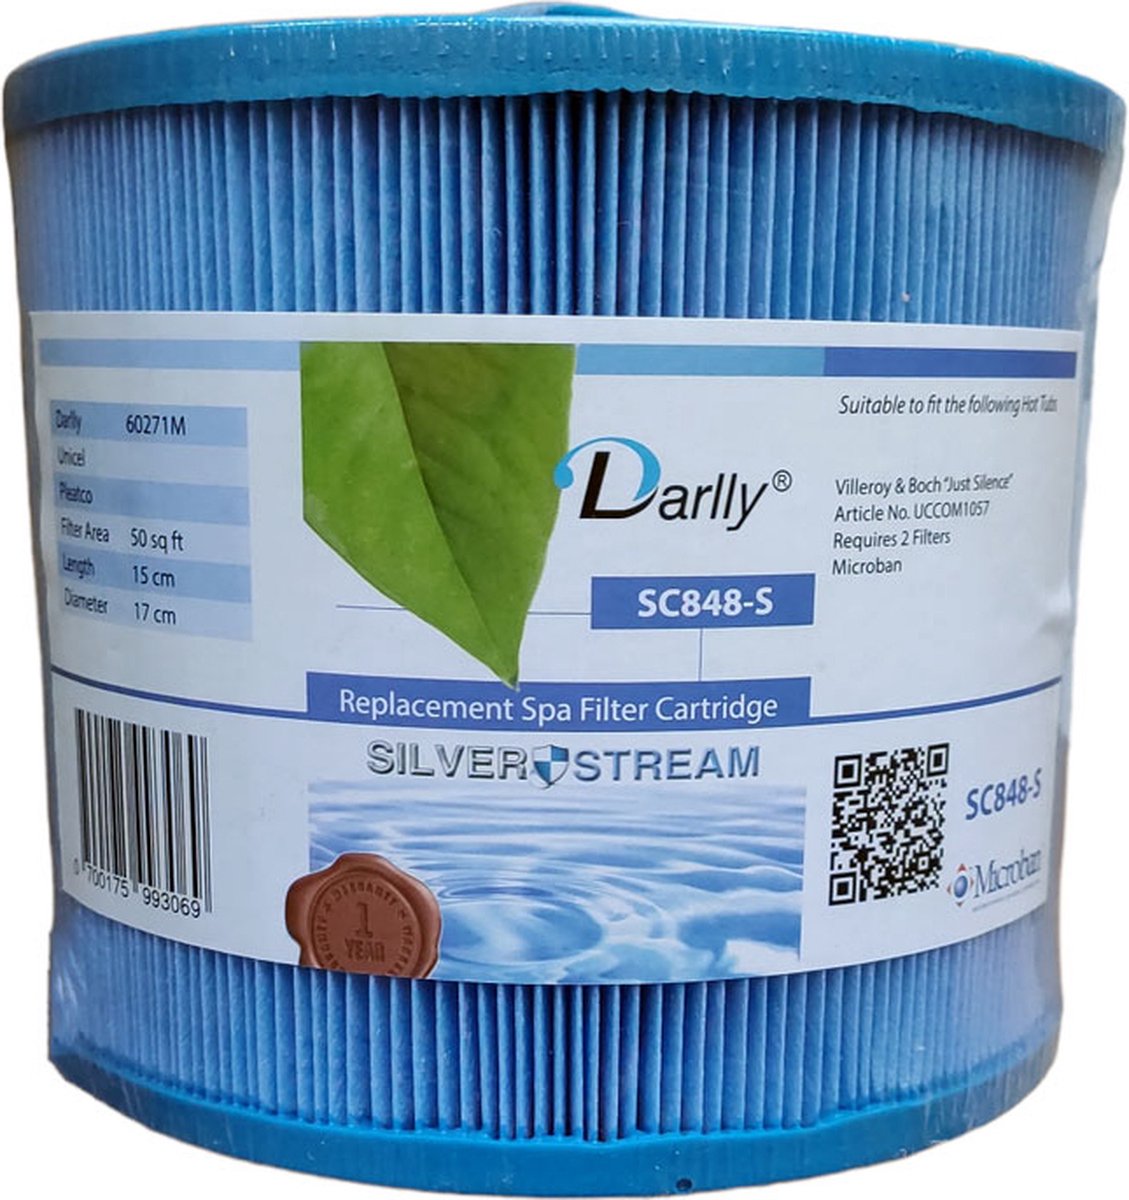 Darlly spa filter SC848-S